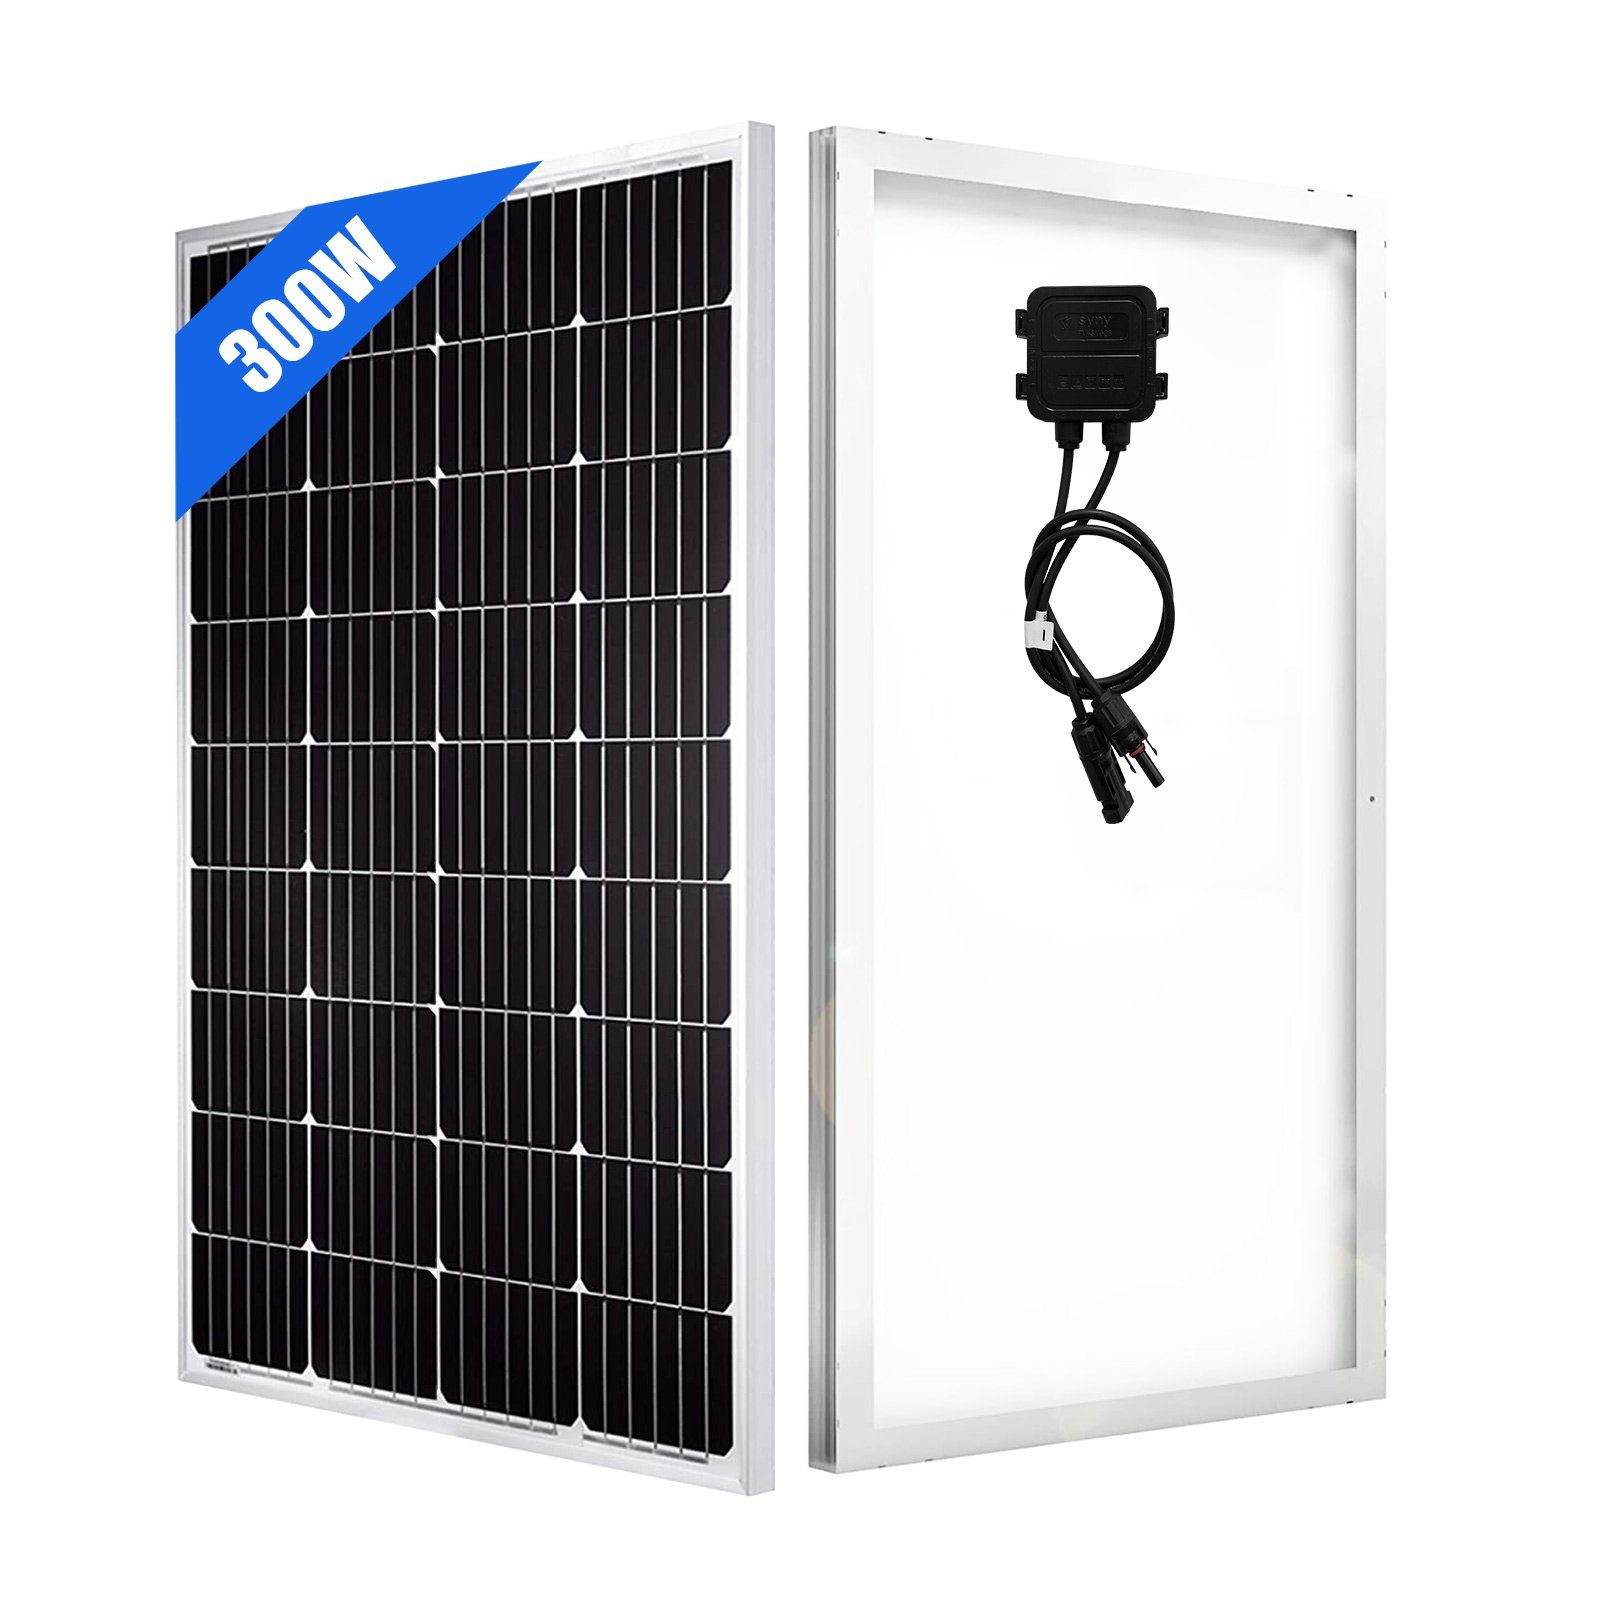 GLIESE Solarmodul 300W Solarpanel Kit Halterung, Solarmodul 300,00 45inch mit Monokristallin W